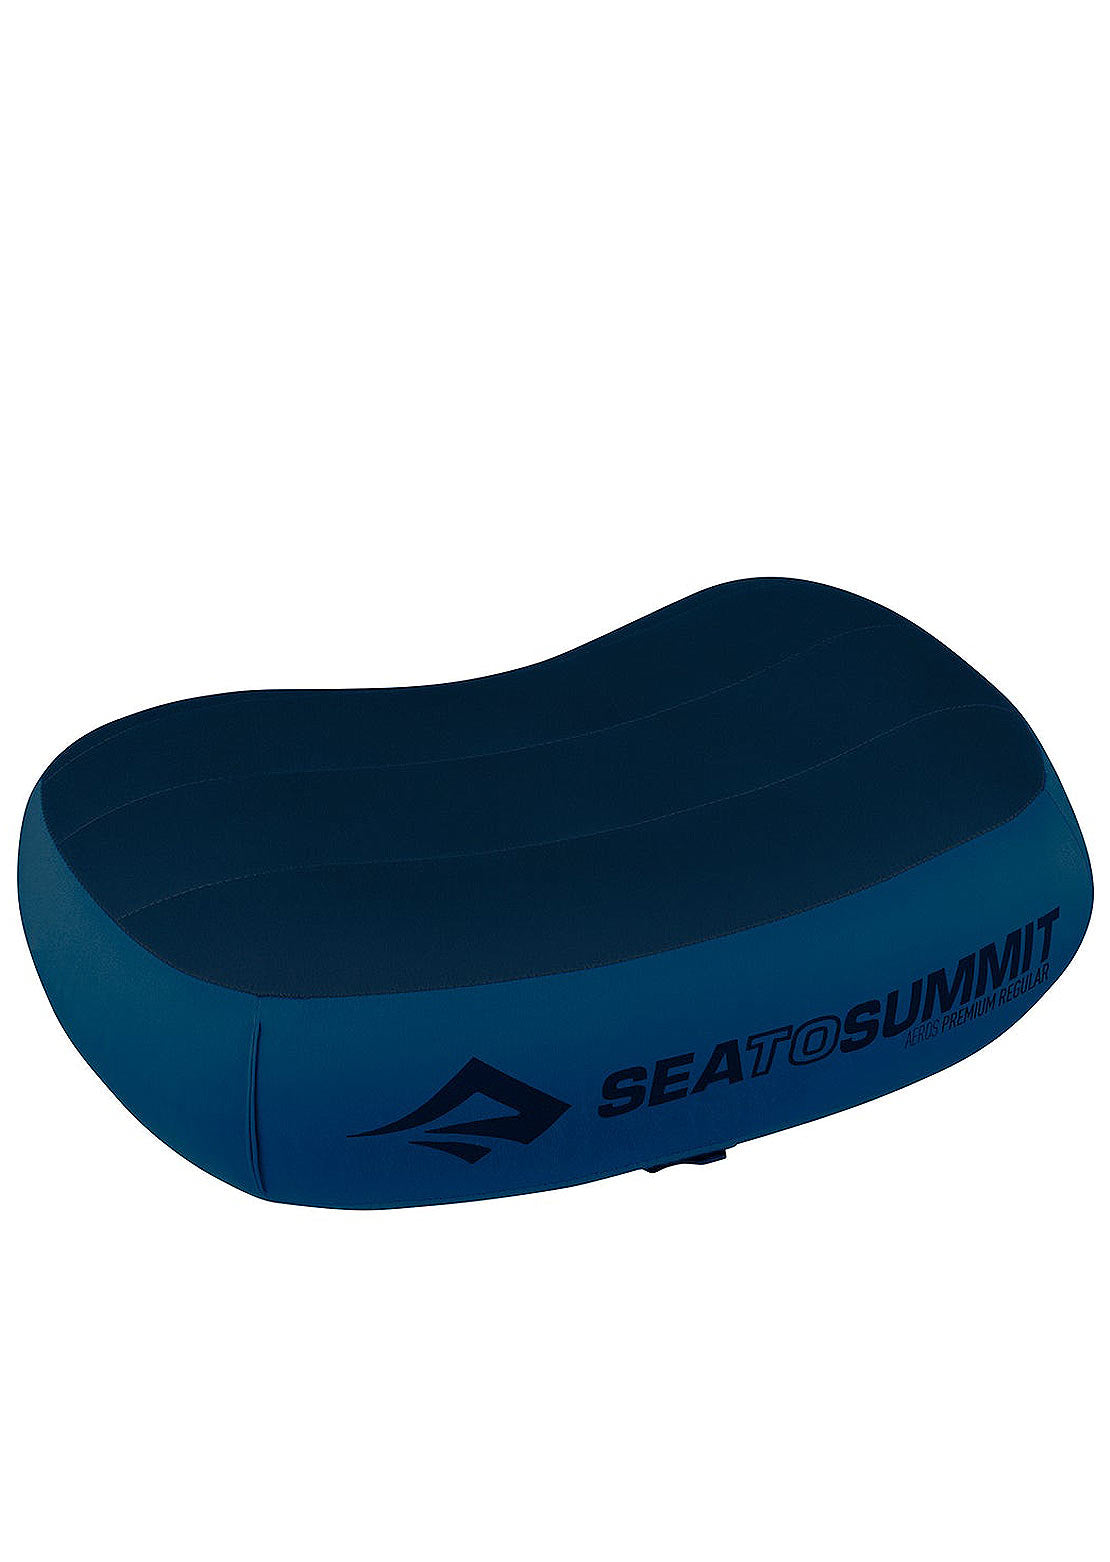 Sea To Summit Aeros Premium Pillow Navy Blue